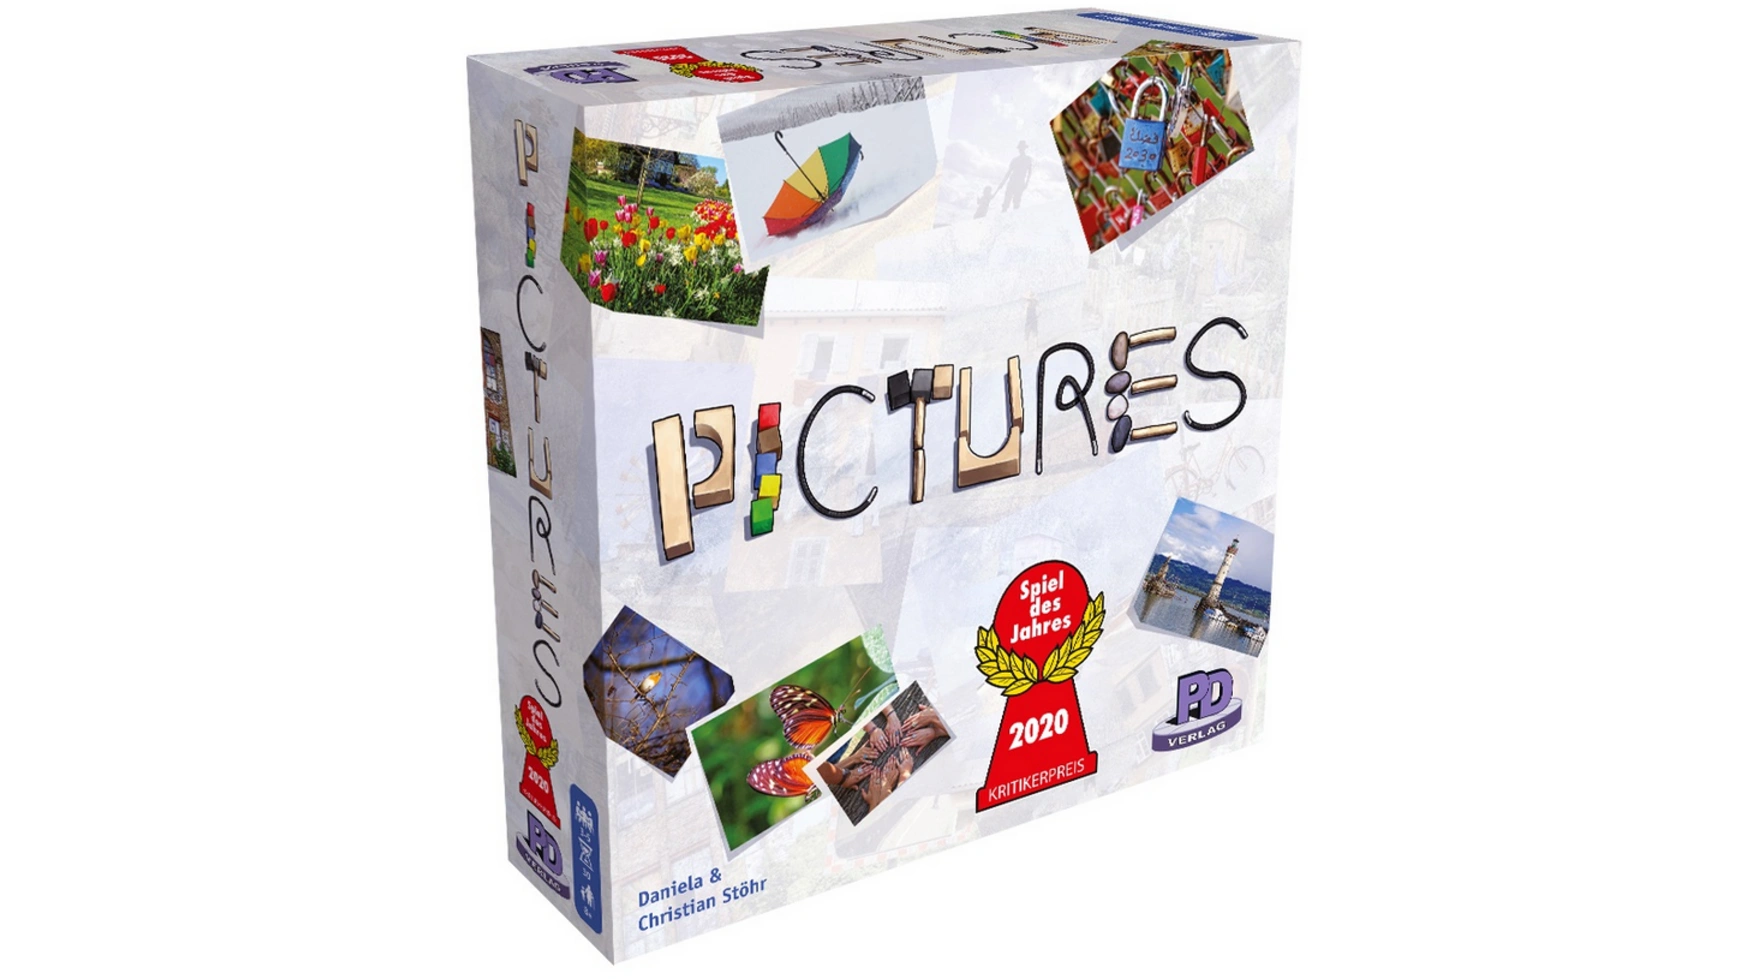 Pegasus Картинки первые кубики fisher price для малышей кубики для моторики игра плагин строительные блоки кубики плагины